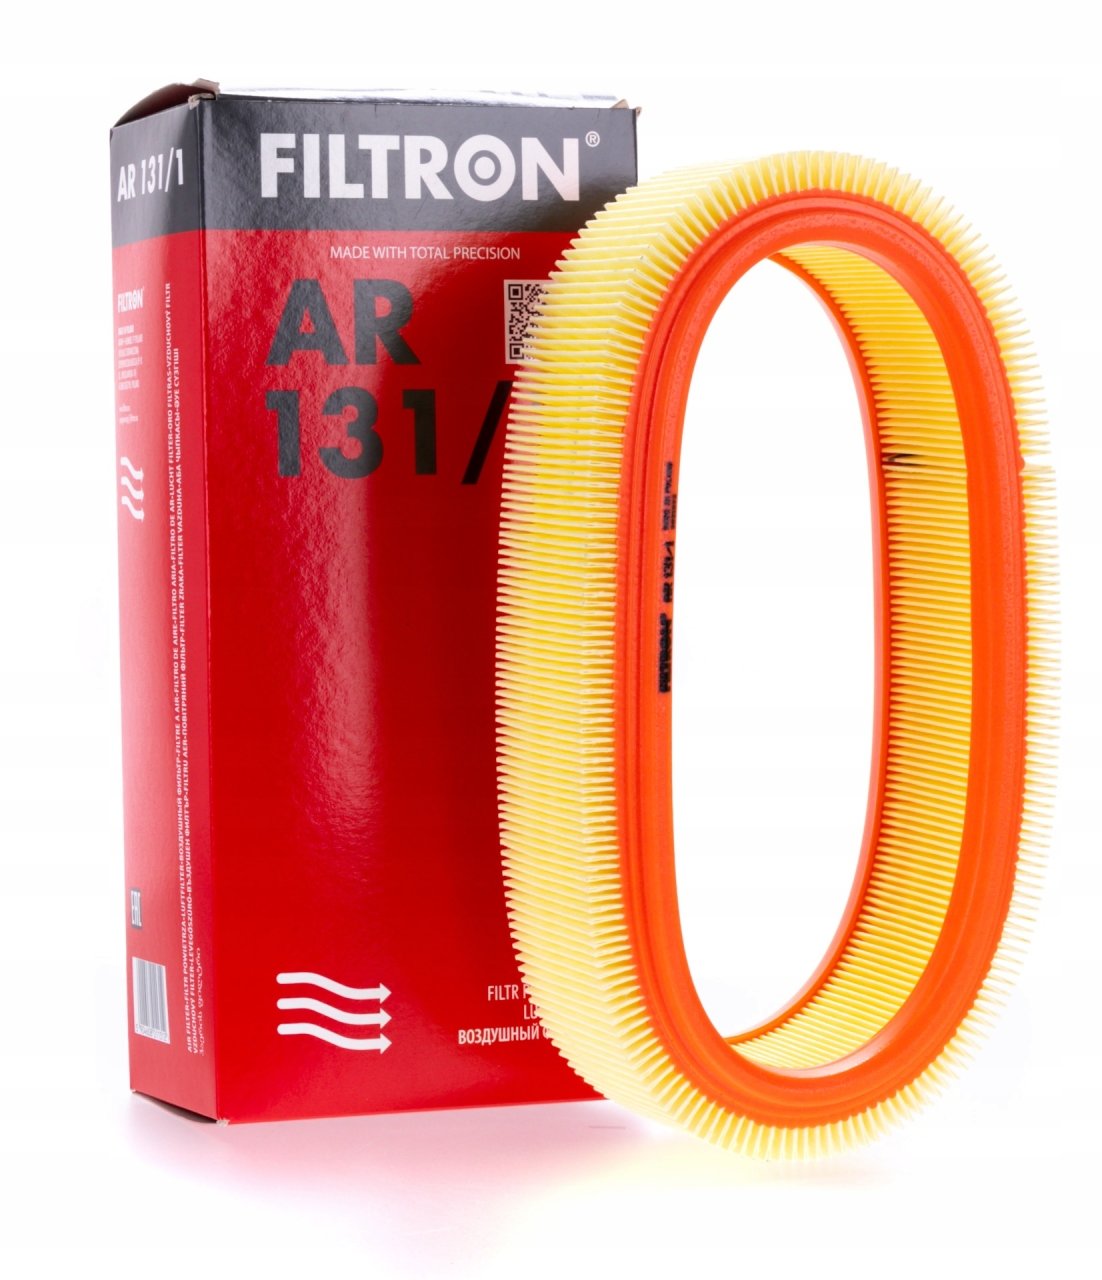 FILTRON AR131-1 | Renault Kango 2 1.4 Benzinli Hava Filtresi